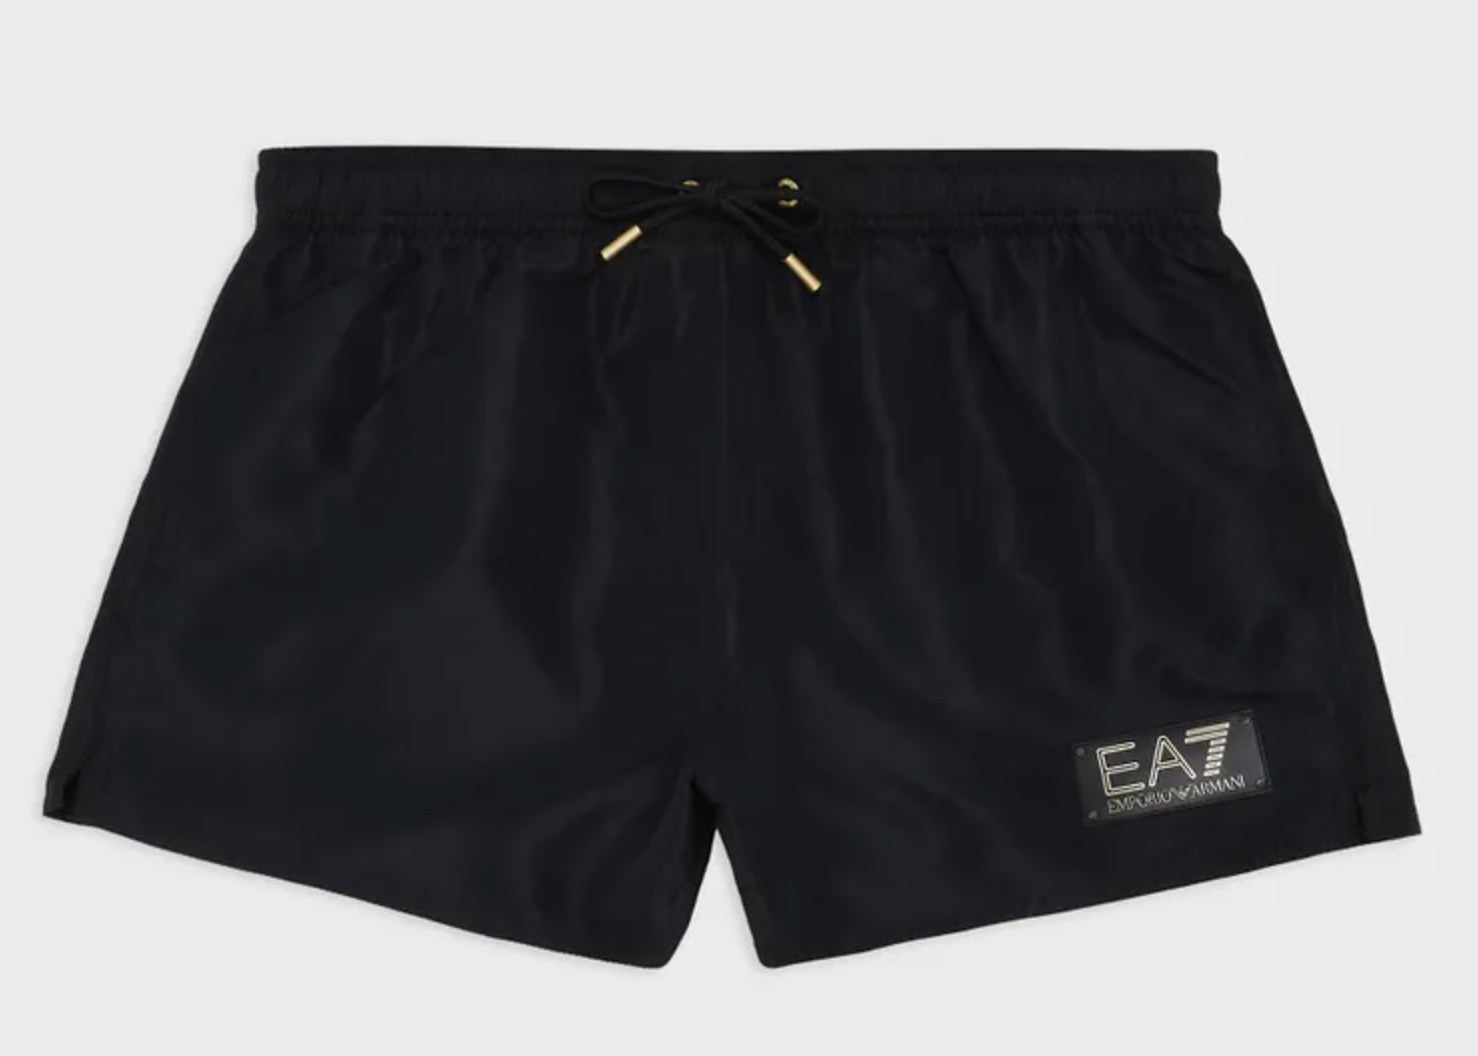 EA7 By Emporio Armani Gold Label Swim Shorts Black